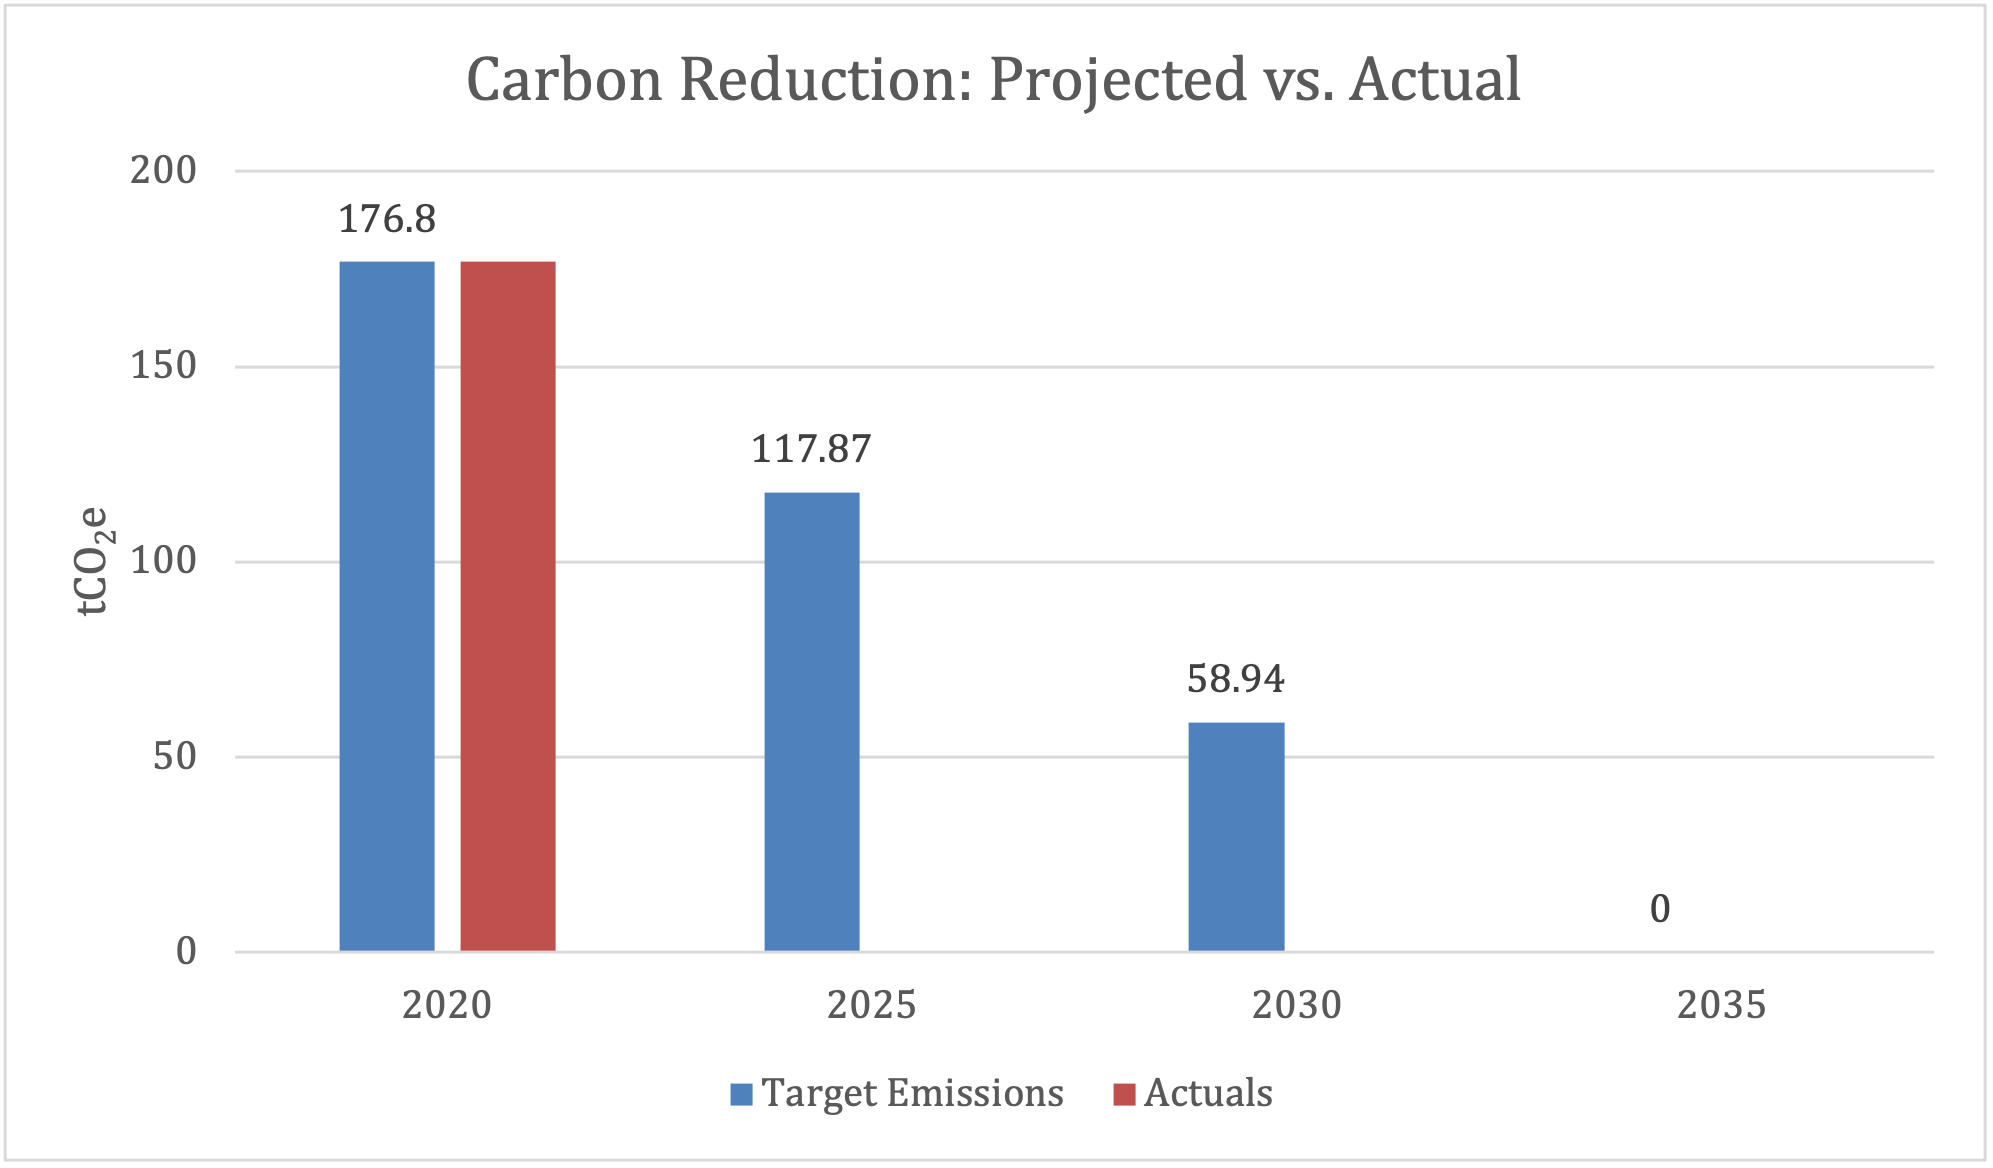 Carbon reduction, projection vs. actual